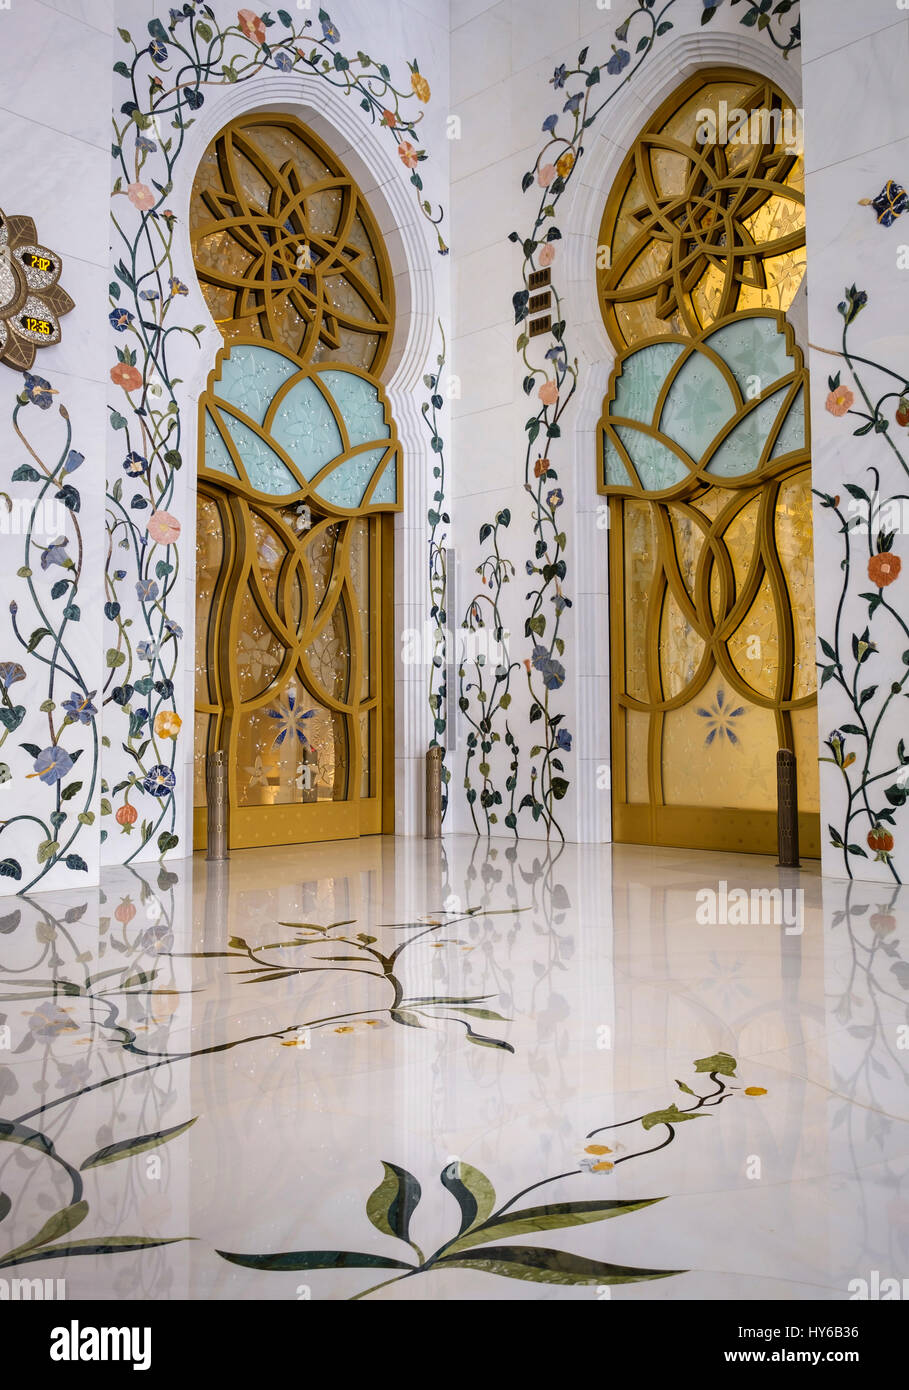 Vereinigte Arabische Emirate, ABU DHABI - ca. Januar 2017: Innenarchitektur von der Sheikh-Zayed-Moschee Stockfoto